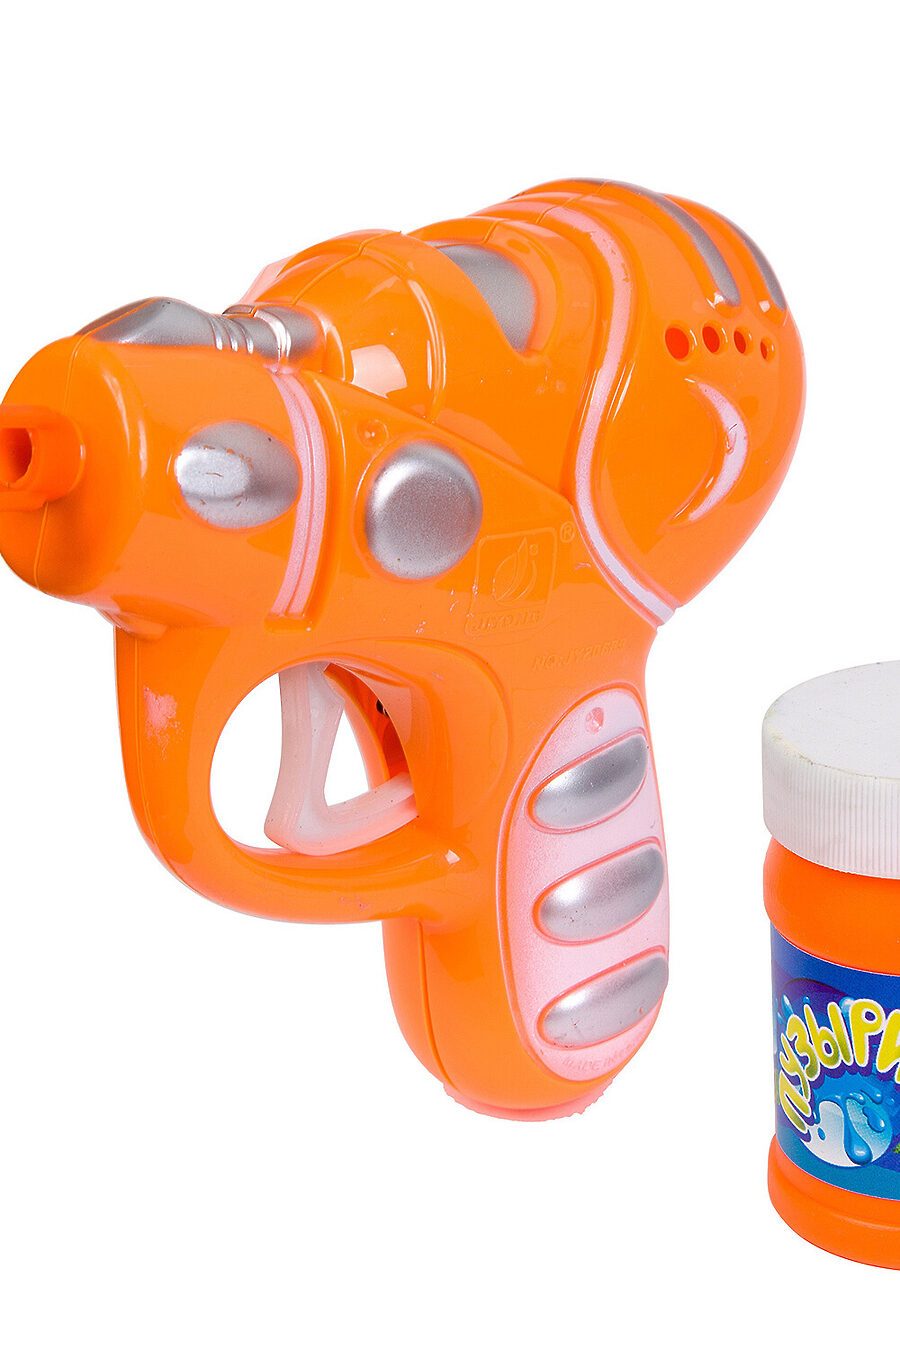 Пистолет с мыльными пузырями для детей BONDIBON 197336 купить оптом от производителя. Совместная покупка игрушек в OptMoyo